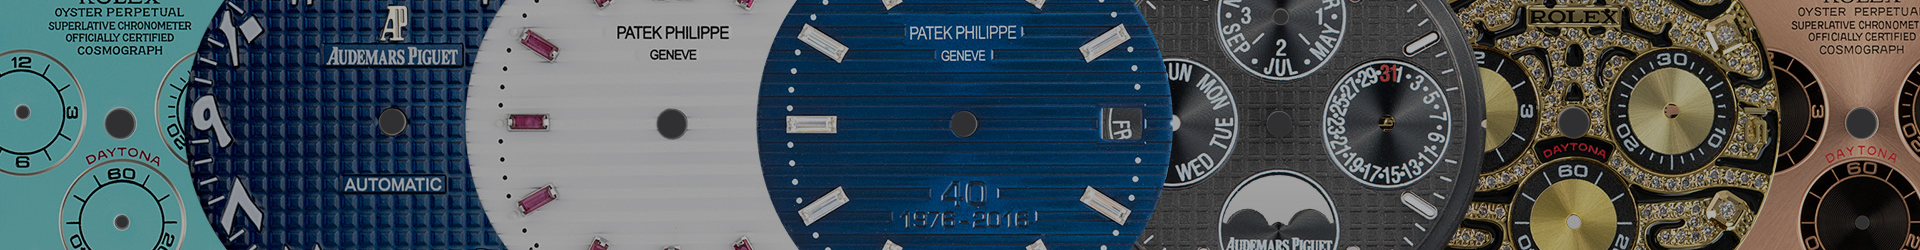 Patek Philippe Dials